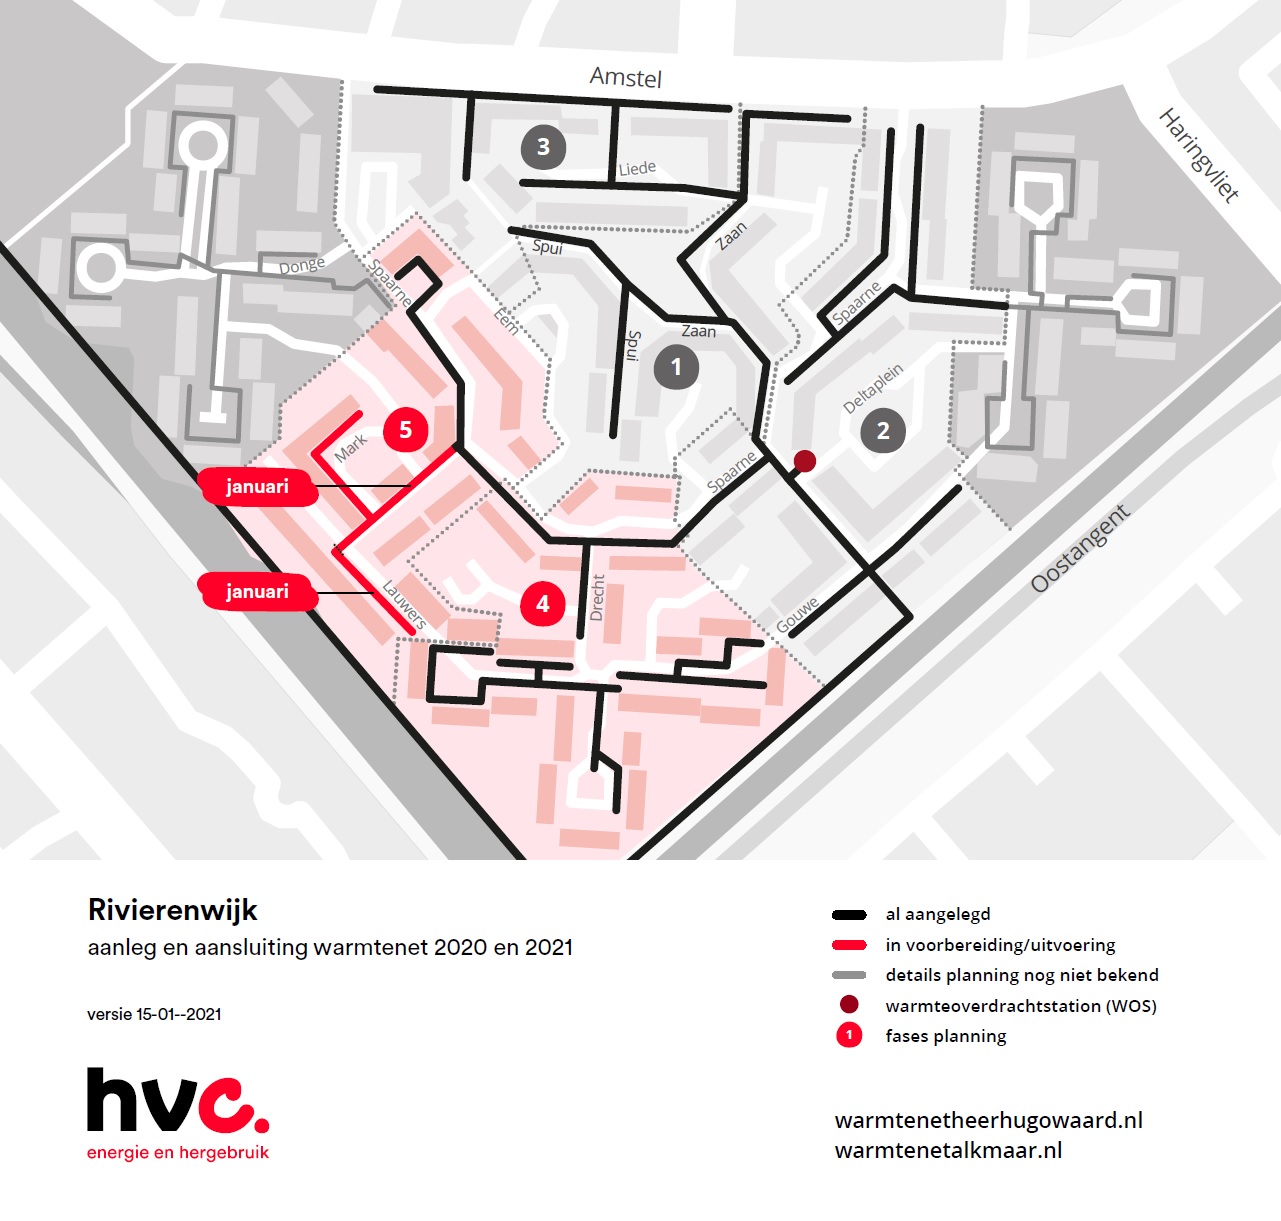 Rivierenwijk-zuid werkzaamheden januari 2021